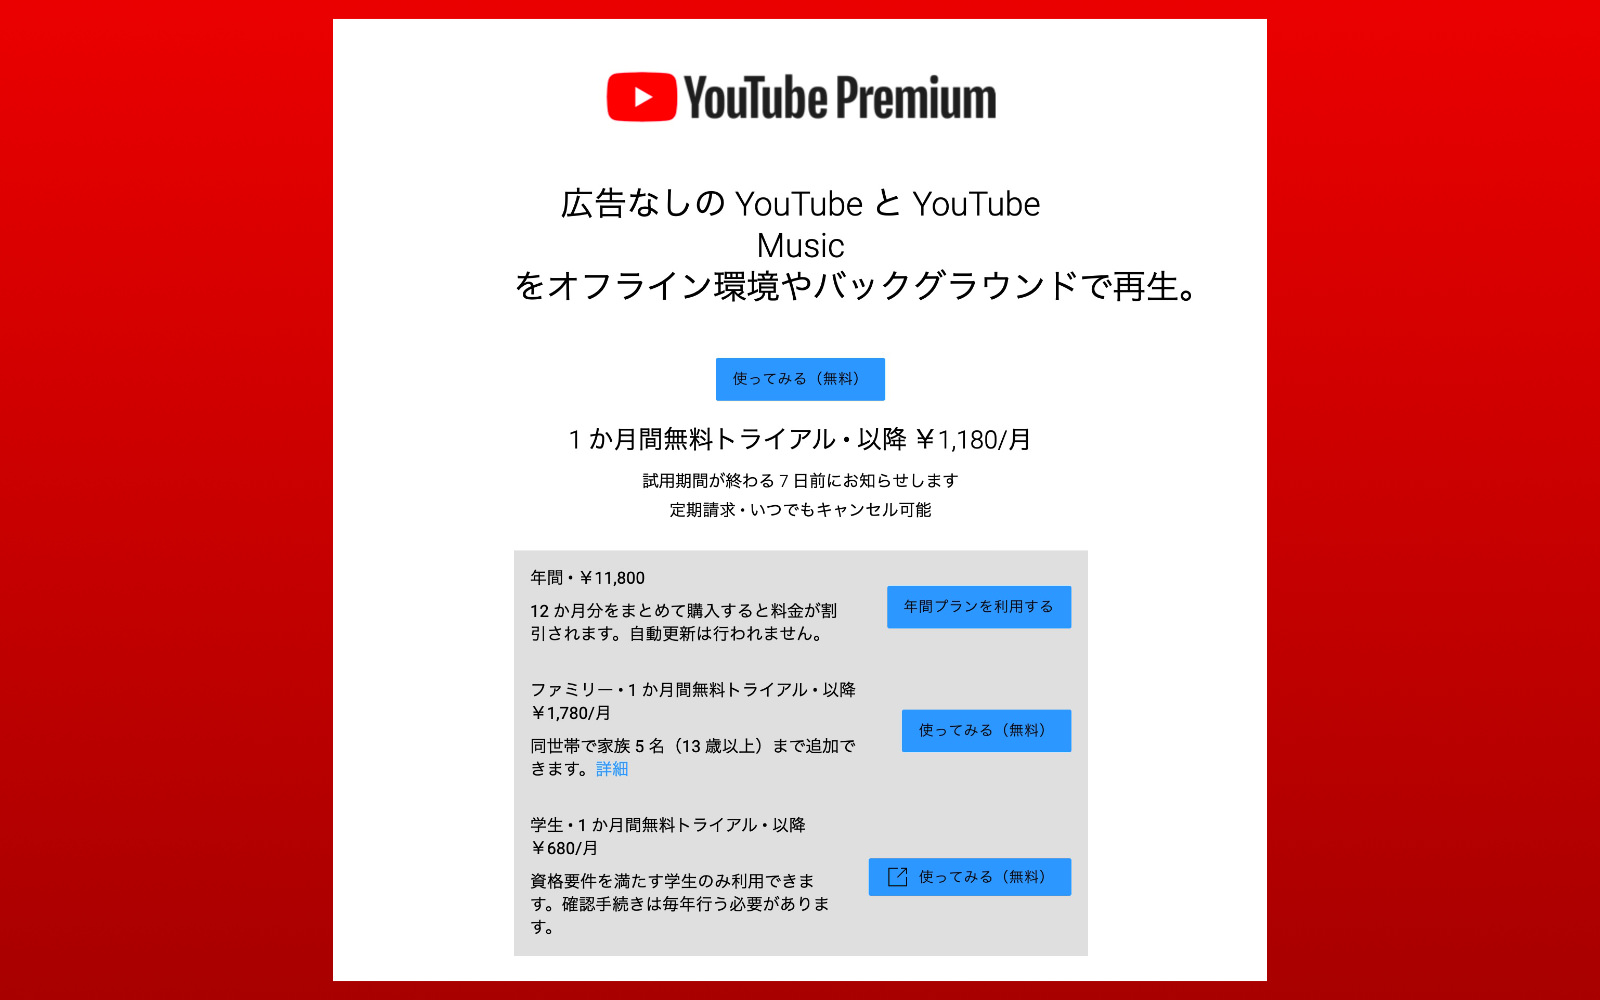 YouTube Premium pricing